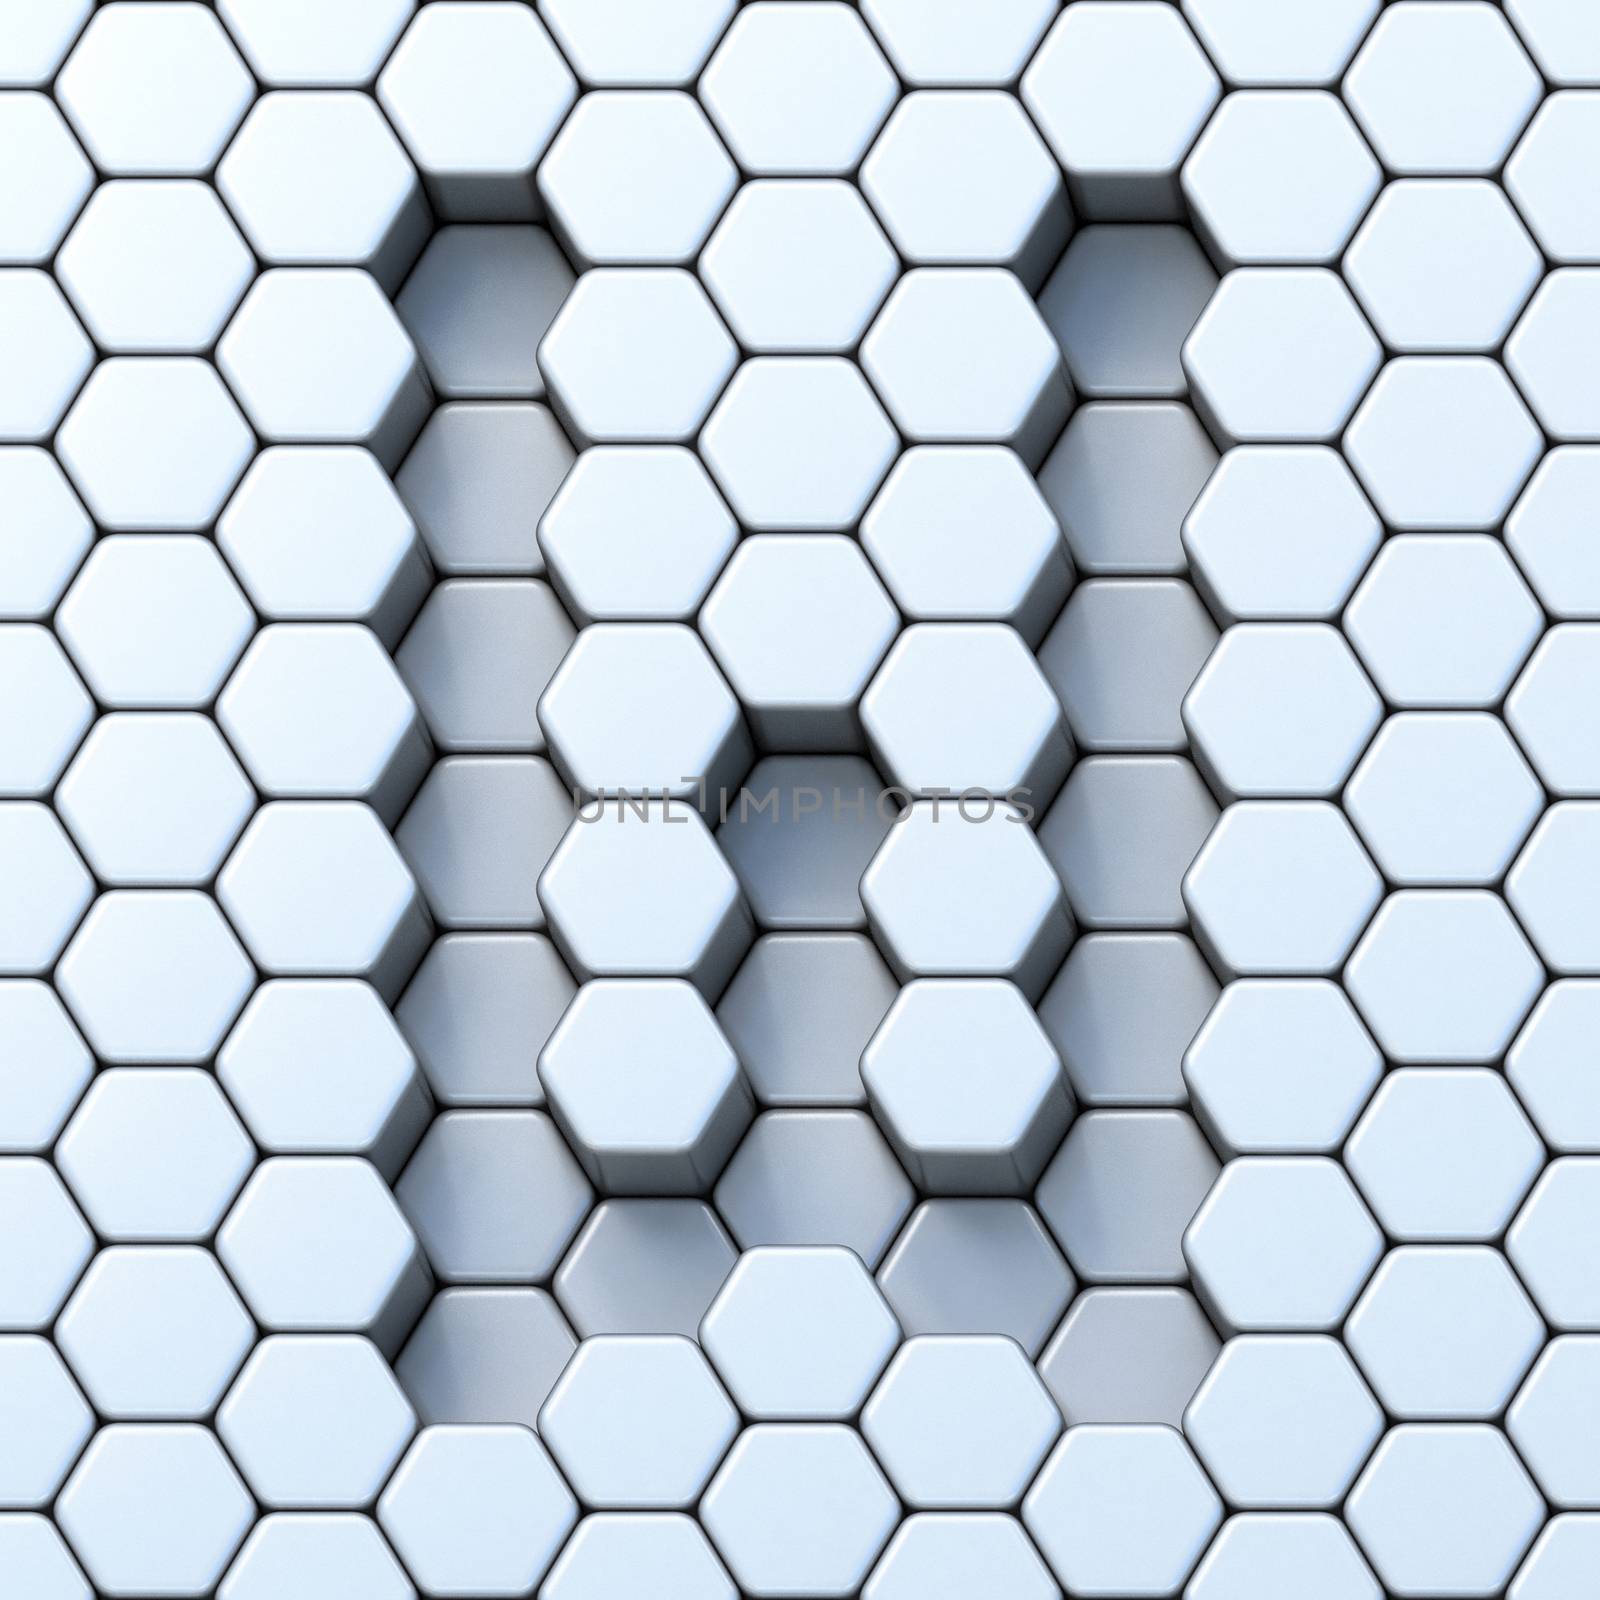 Hexagonal grid letter W 3D render illustration